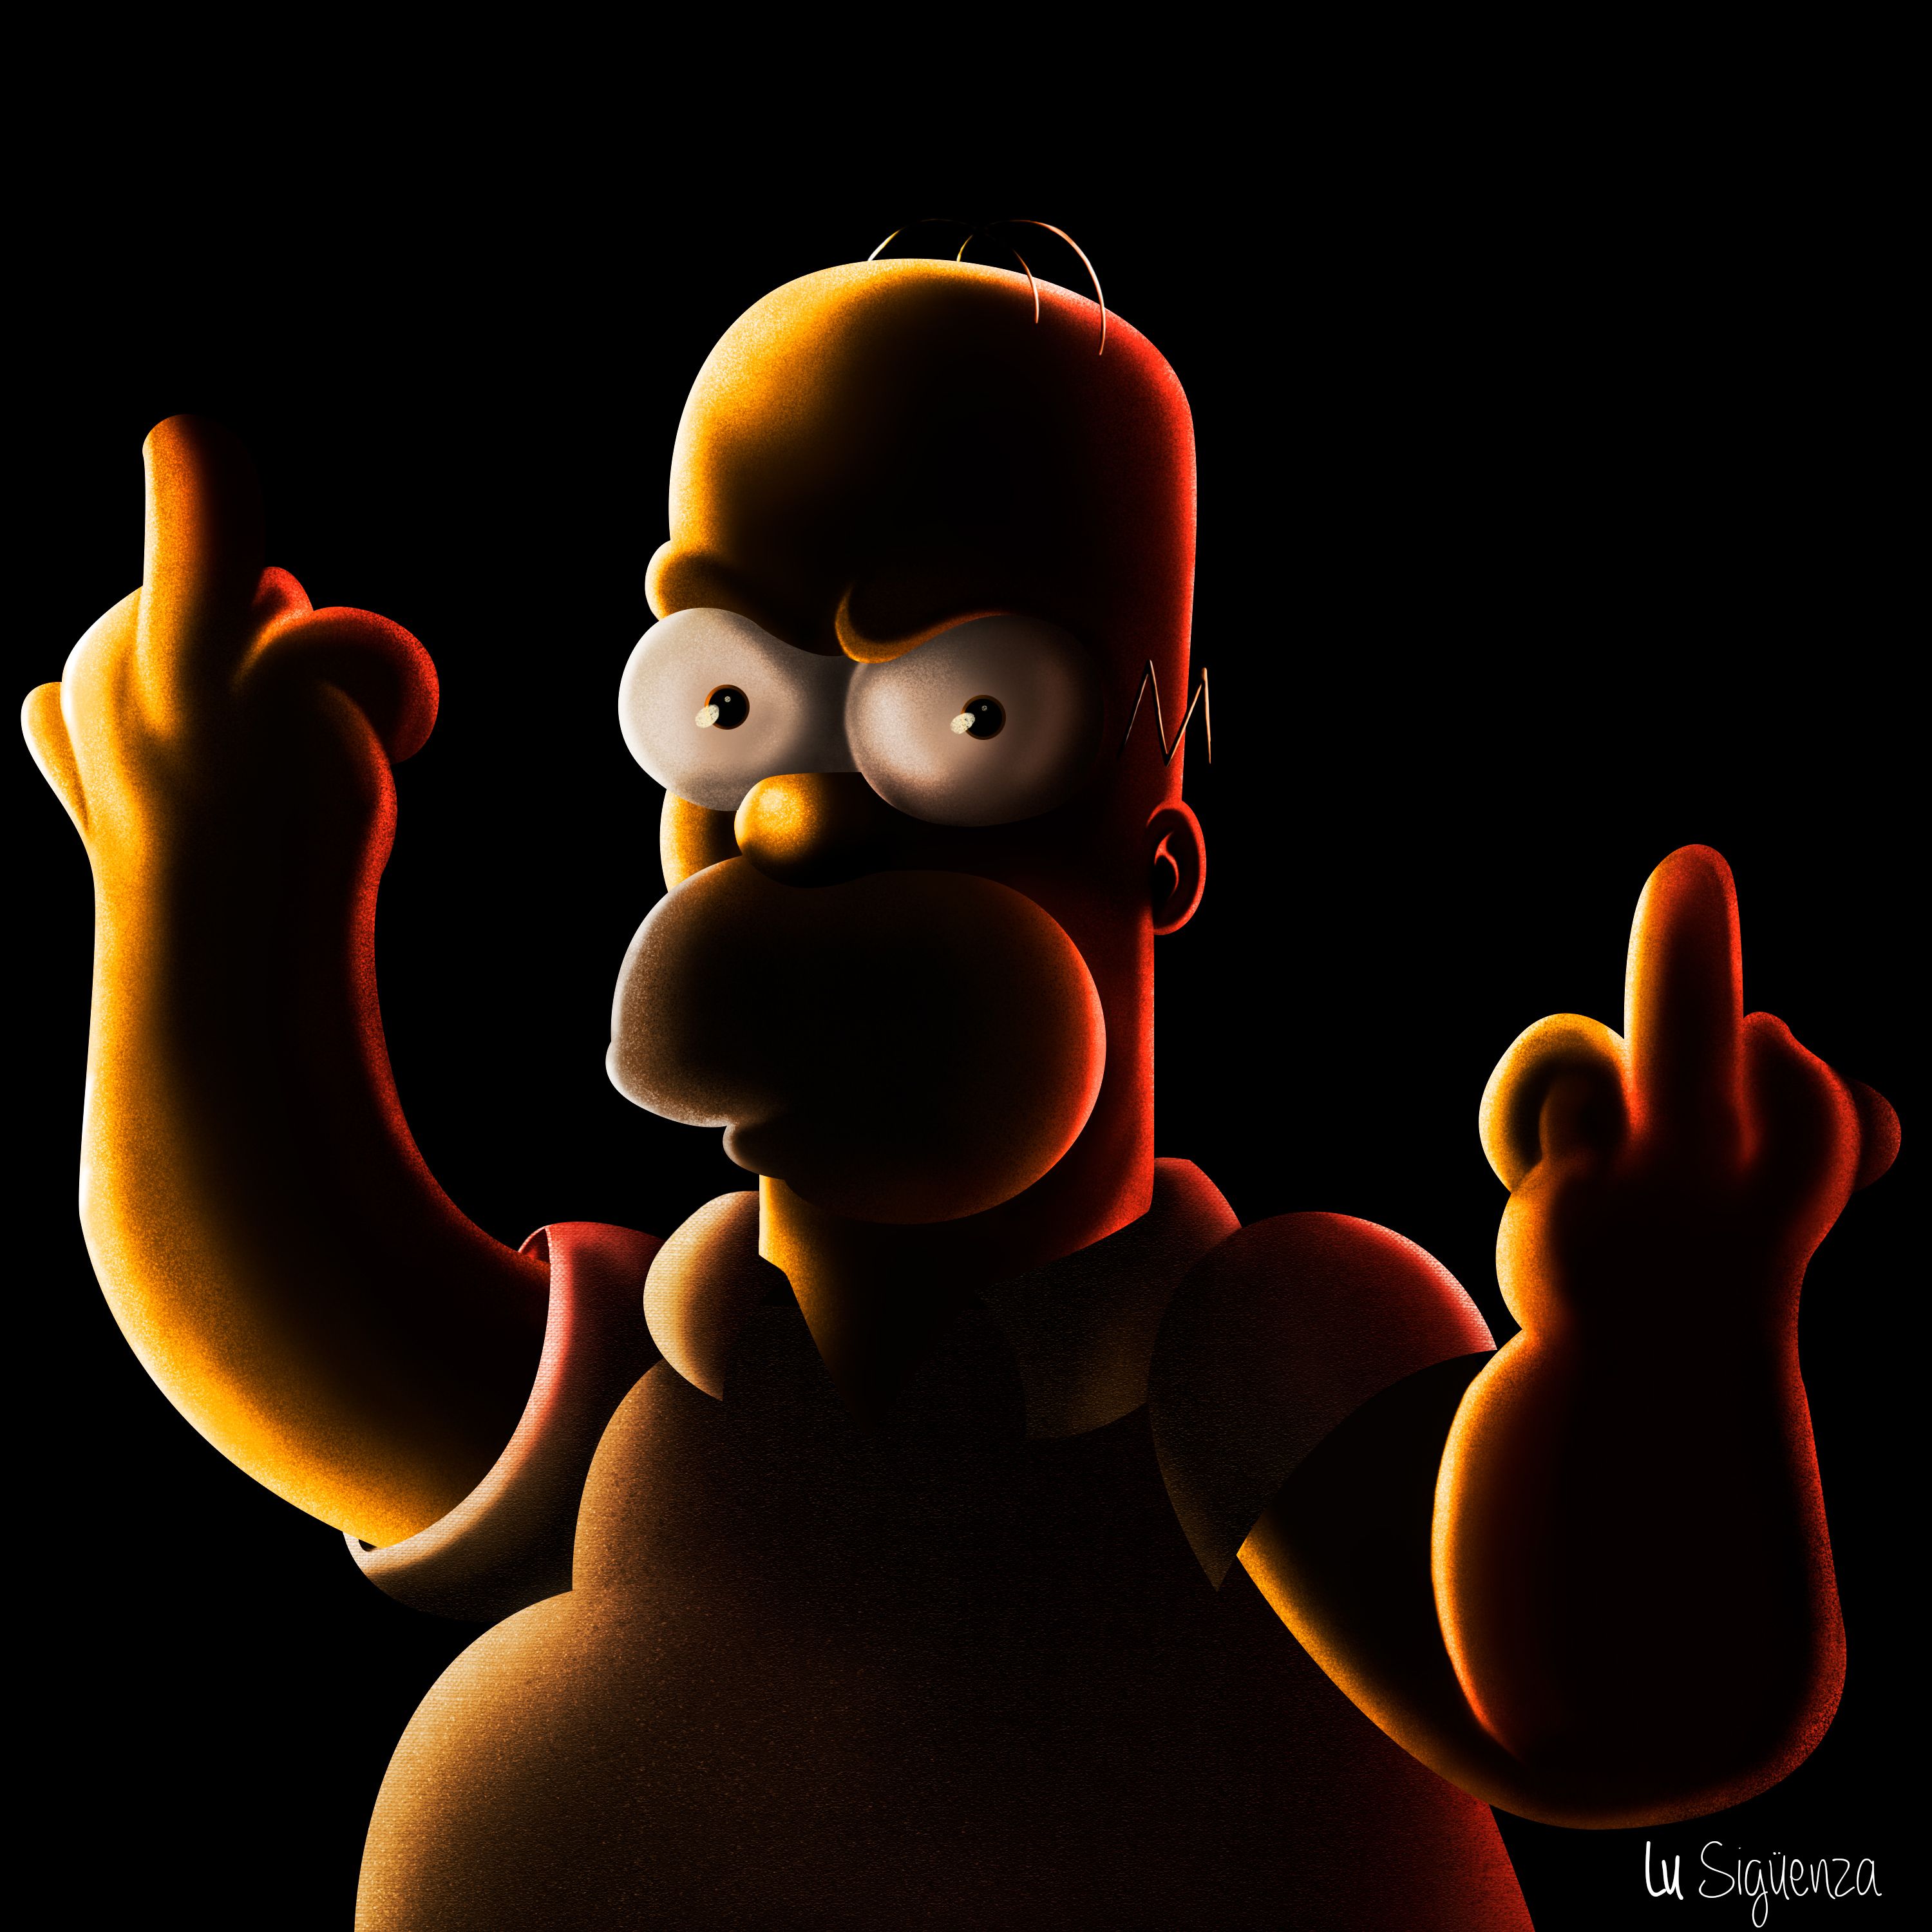 Bart Simpson, programas de televisión HD, fondos de pantalla 4k, imágenes, fondos